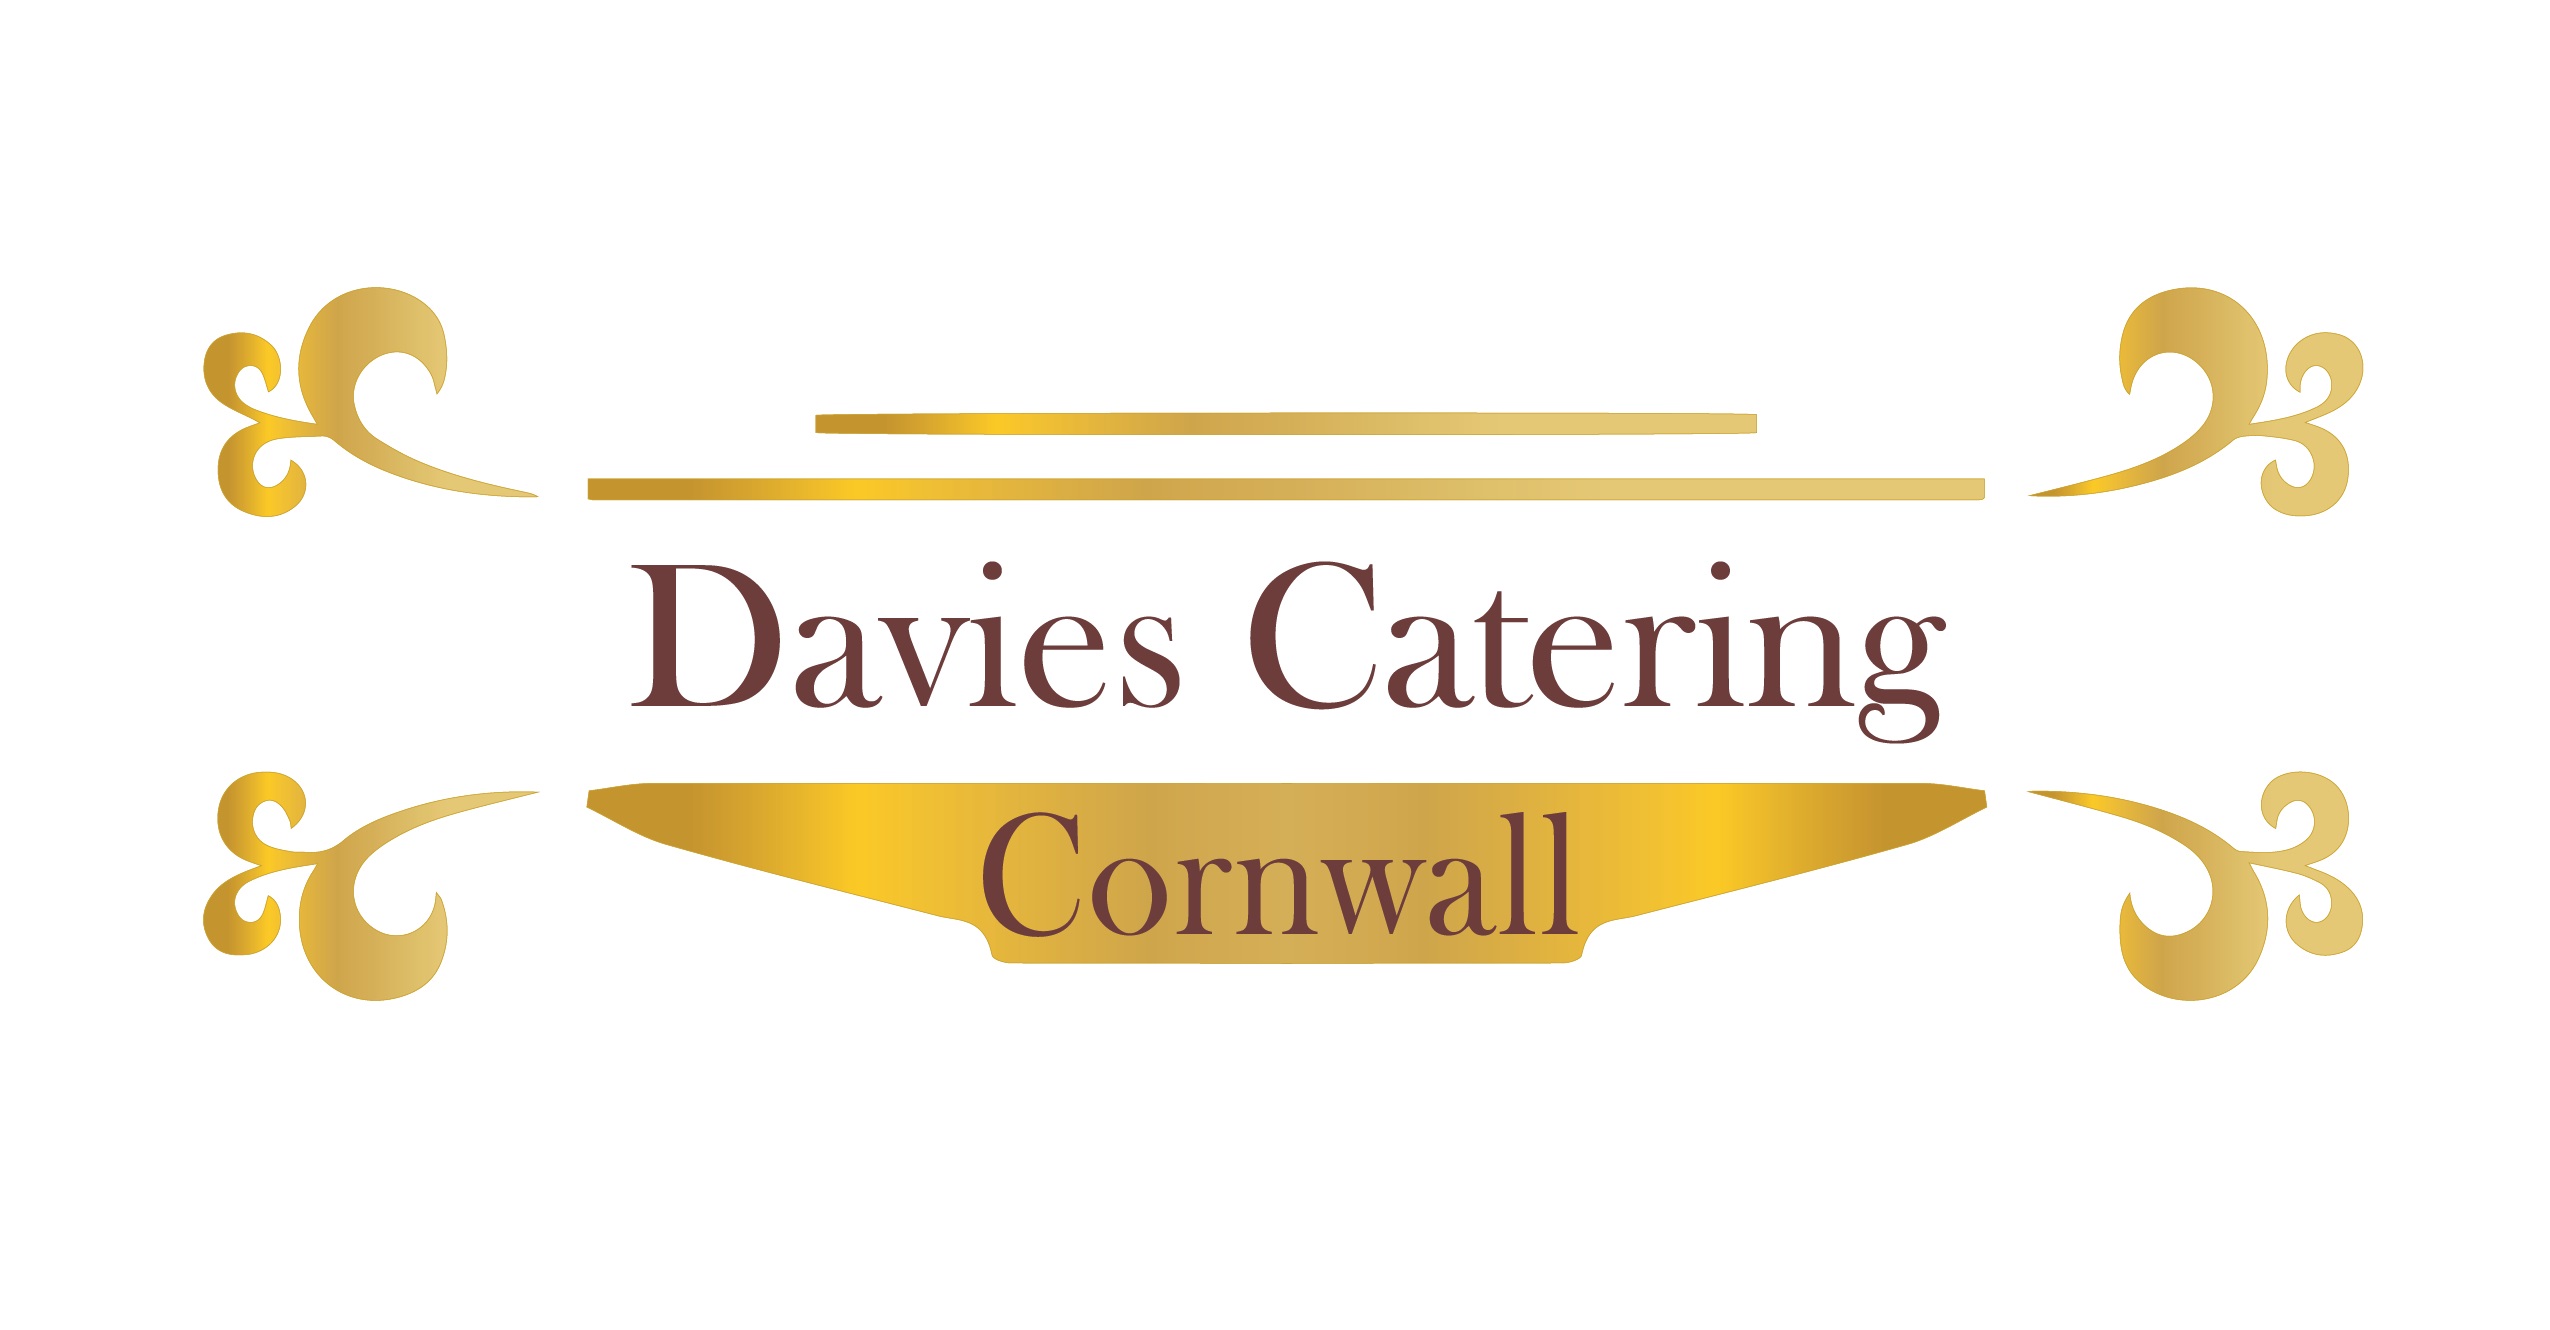 Davies Catering 